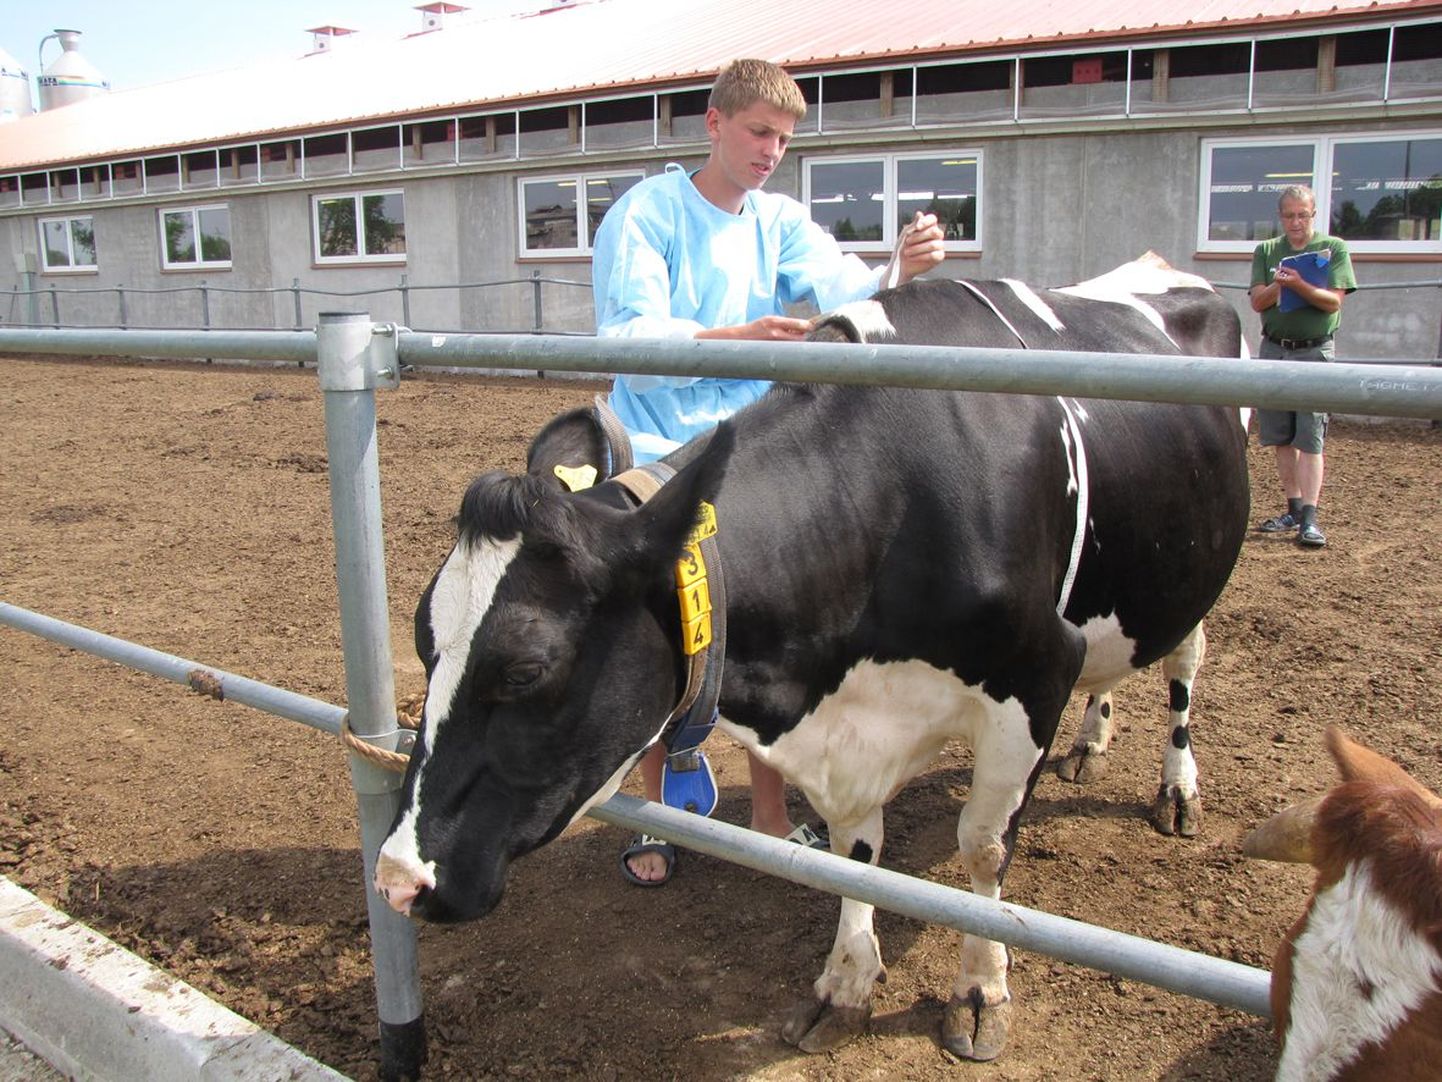 Imavere Sassi talust pärit Taavi Rohtsalu määrab lehma kaalu, mõõtes lehma ümbermõõtu abaluude kohalt.